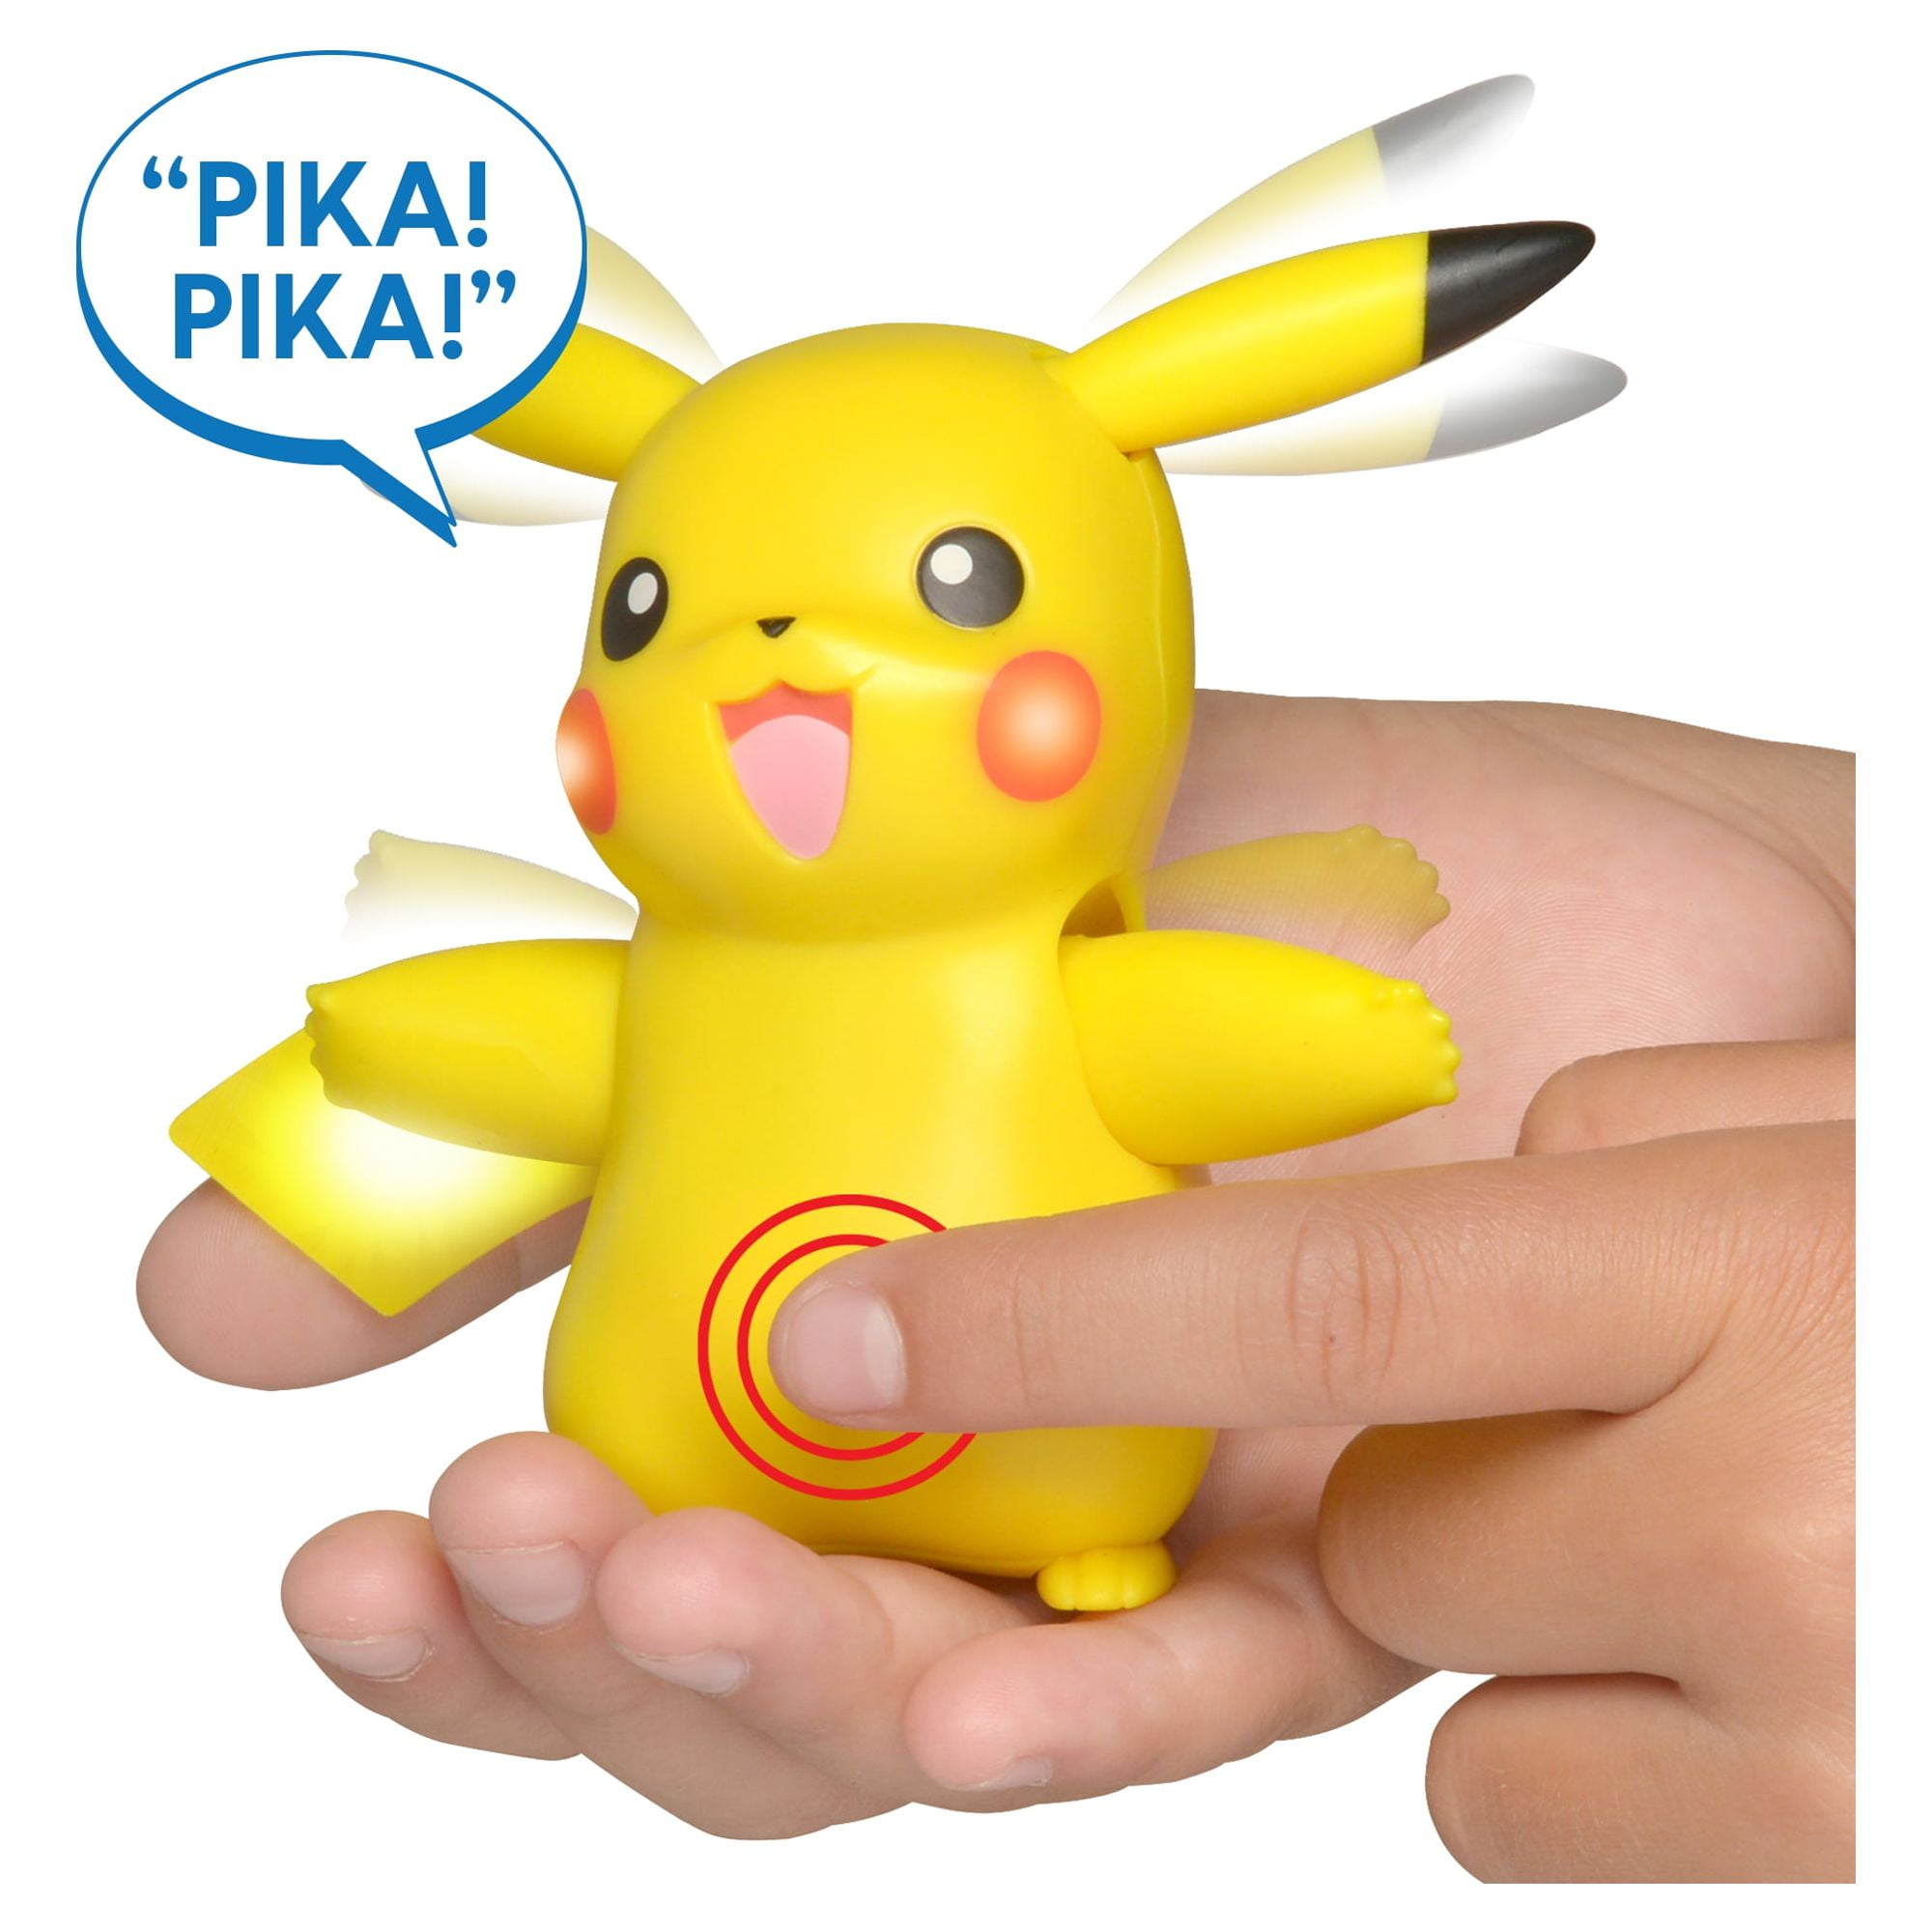 Pokémon My Partner Pikachu Electronic Interactive Toy Figure Brand